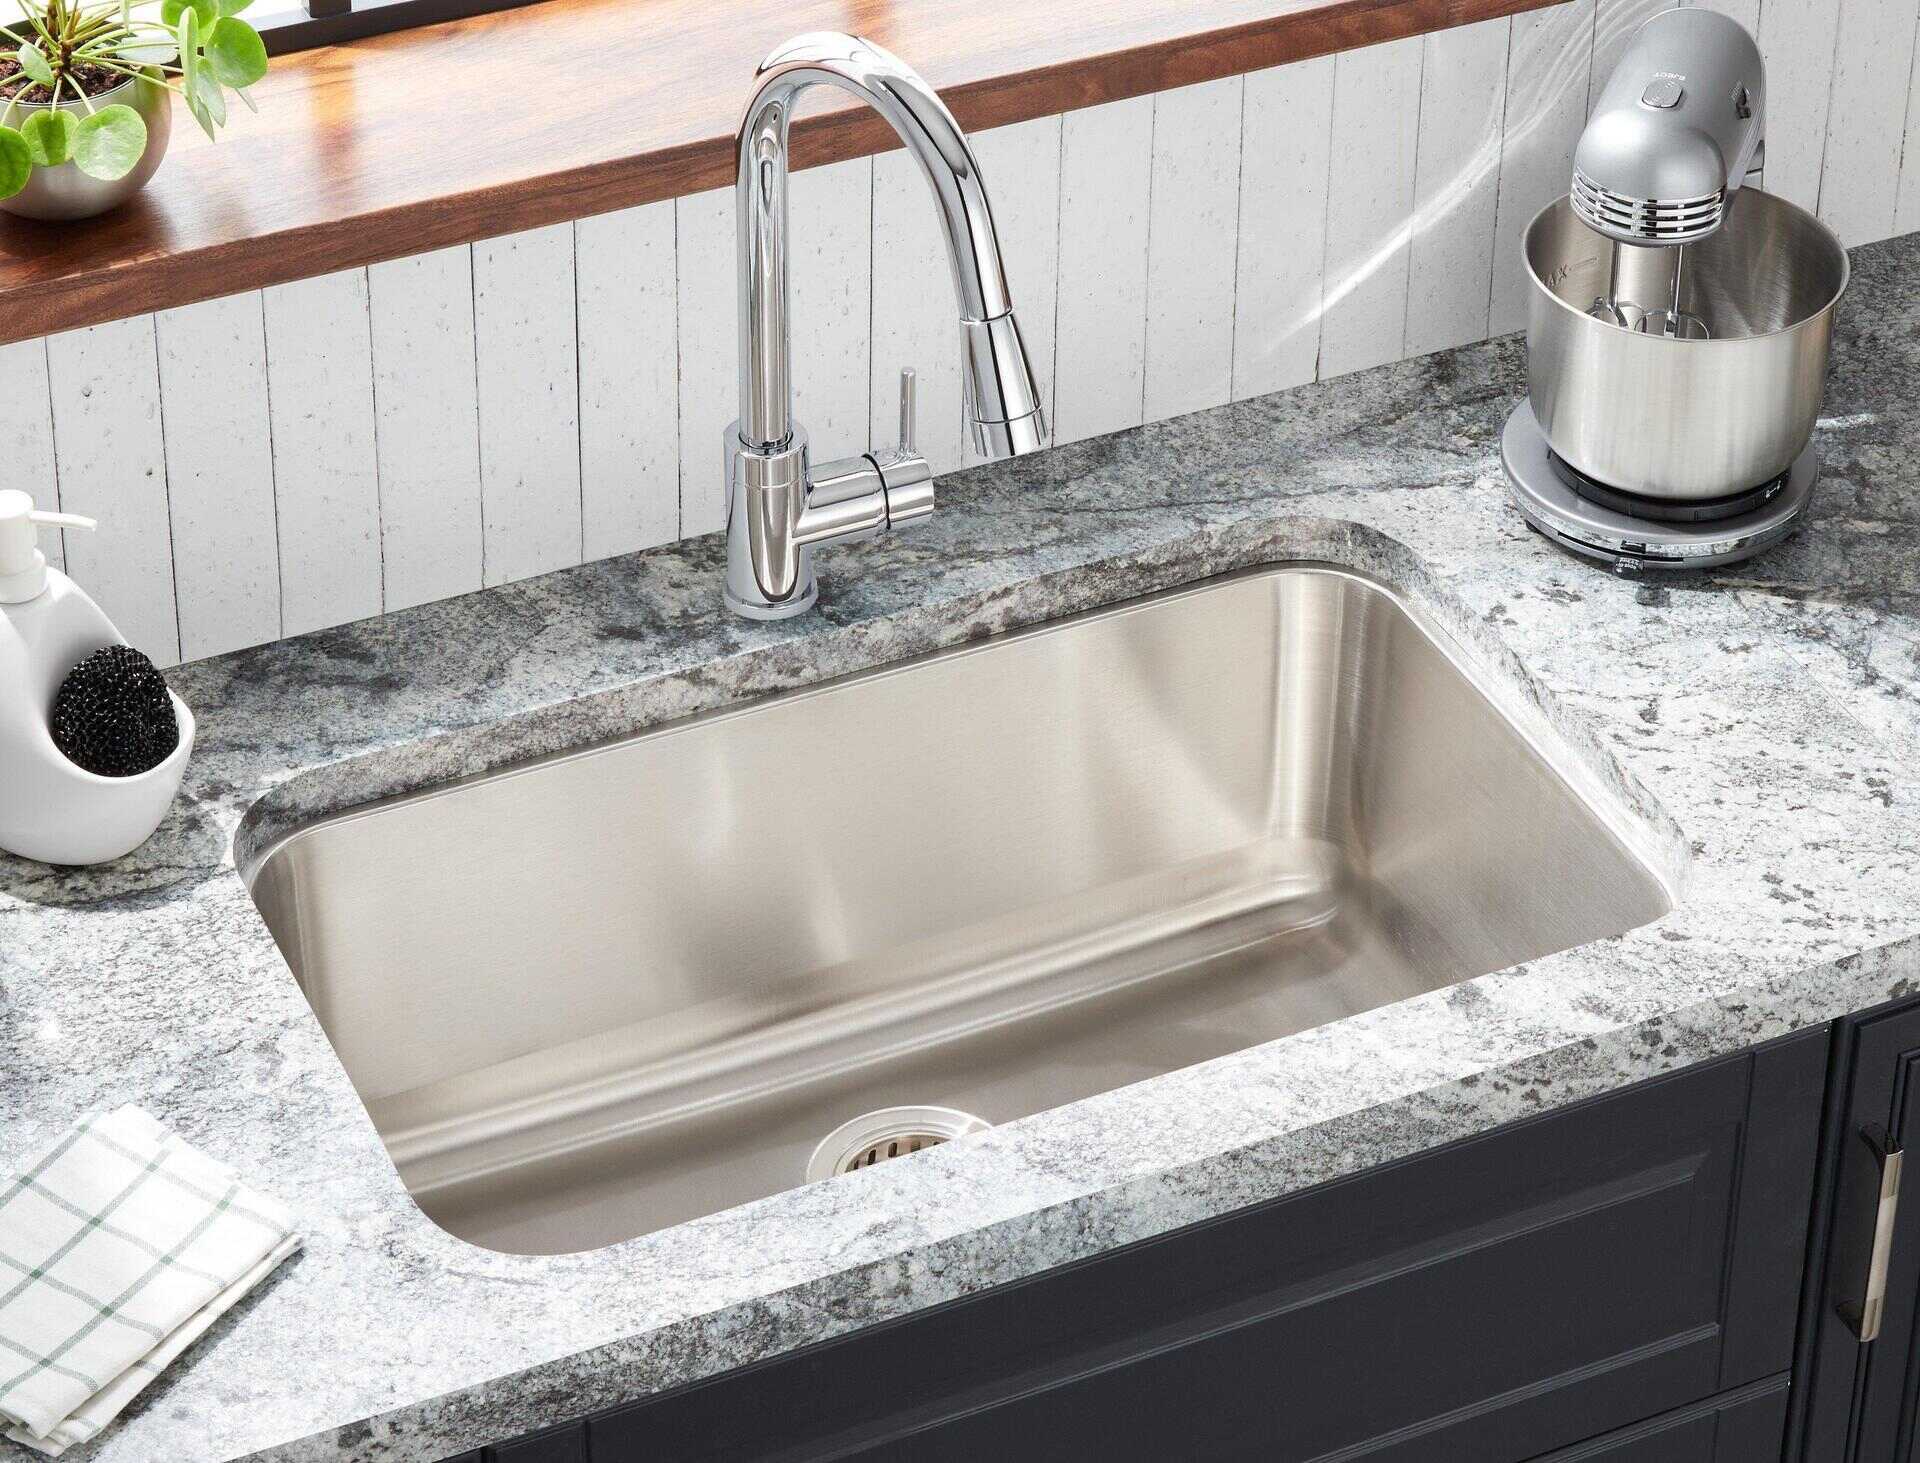 How To Install Undermount Kitchen Sink 1696421664 